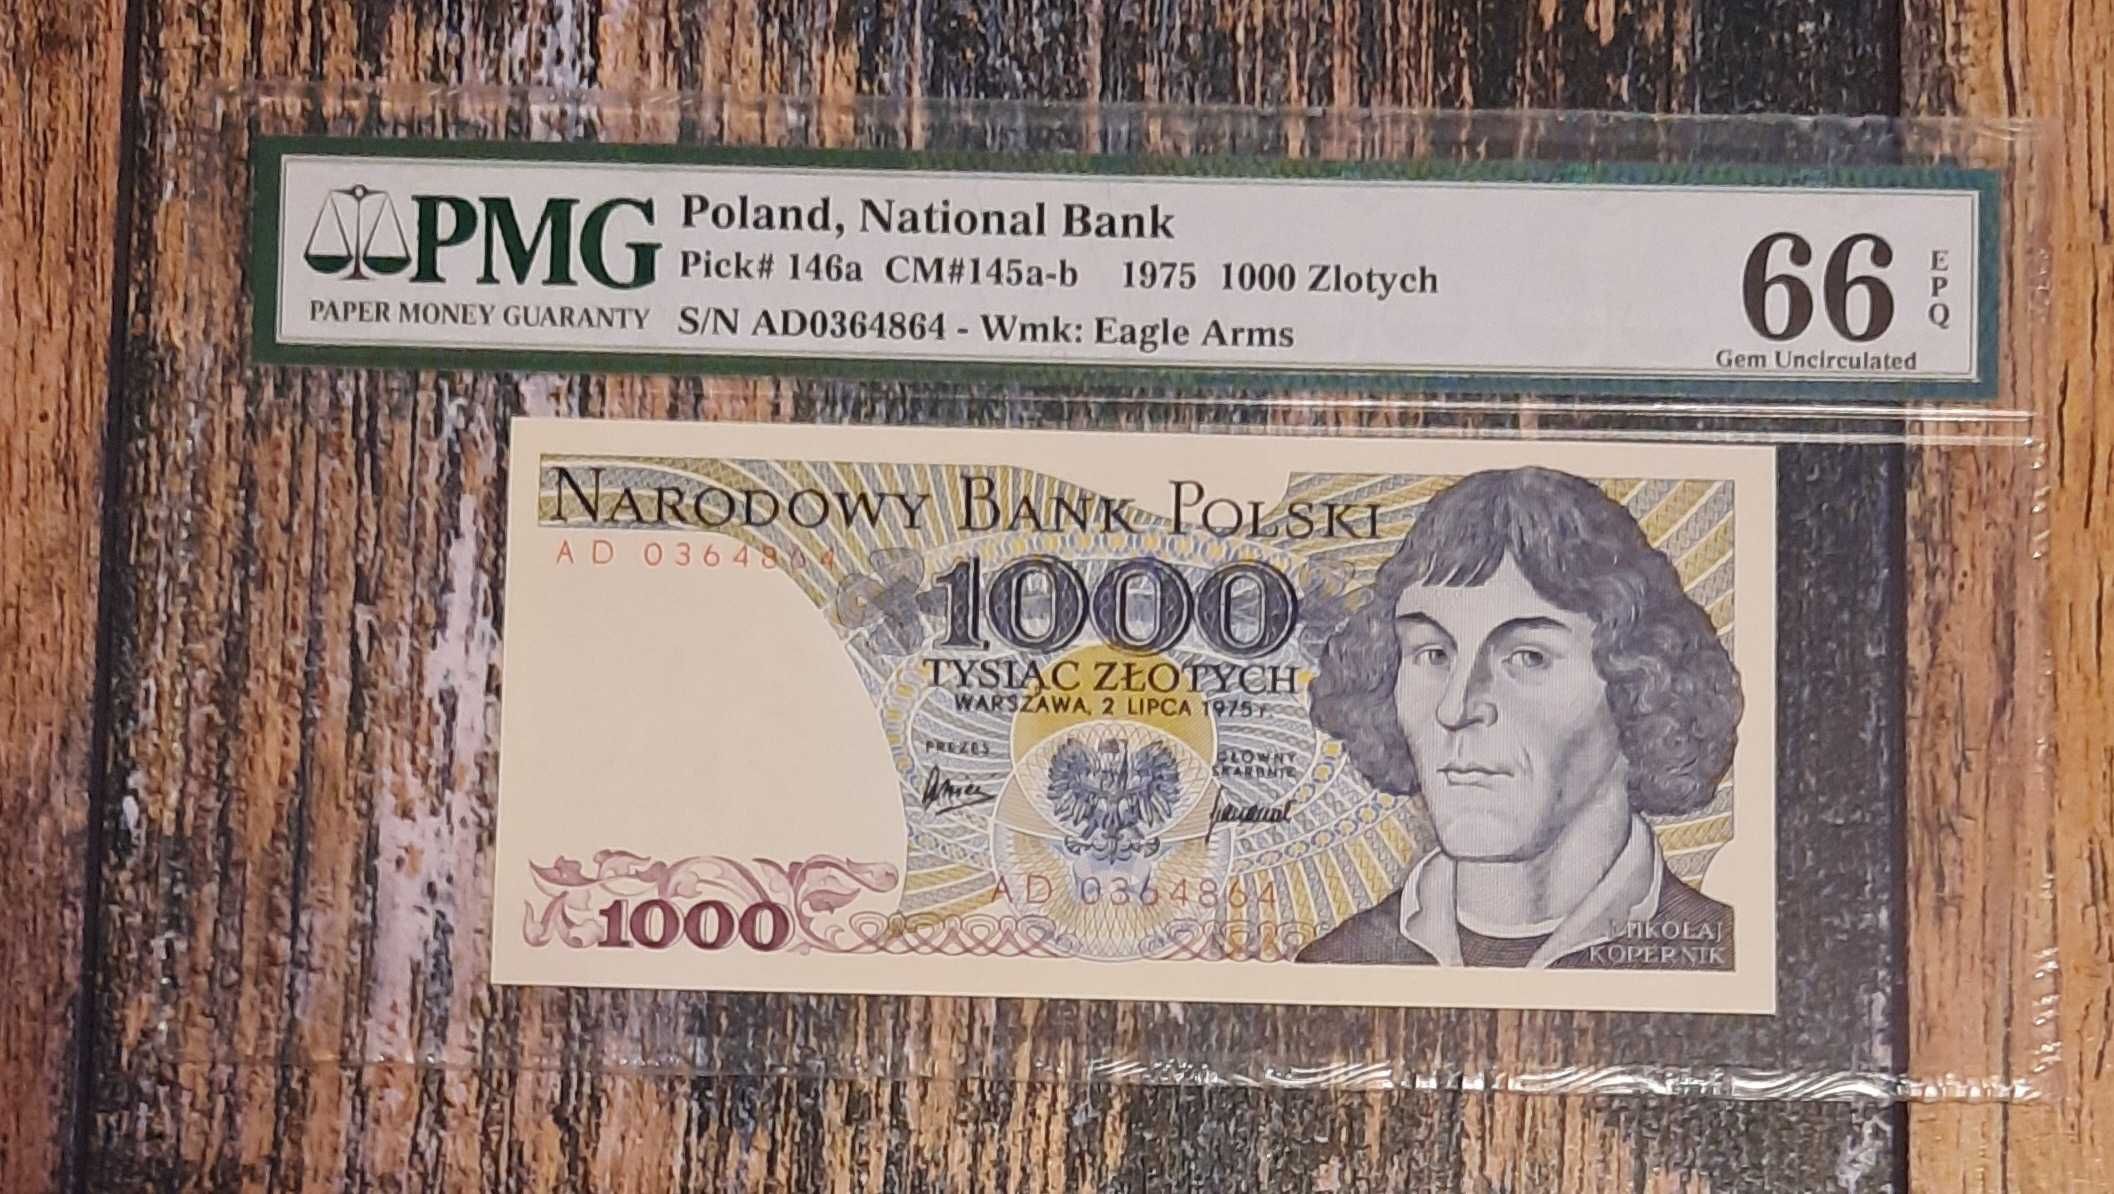 Banknot 1000 zł. Prl w gradingu widoczny na skanie